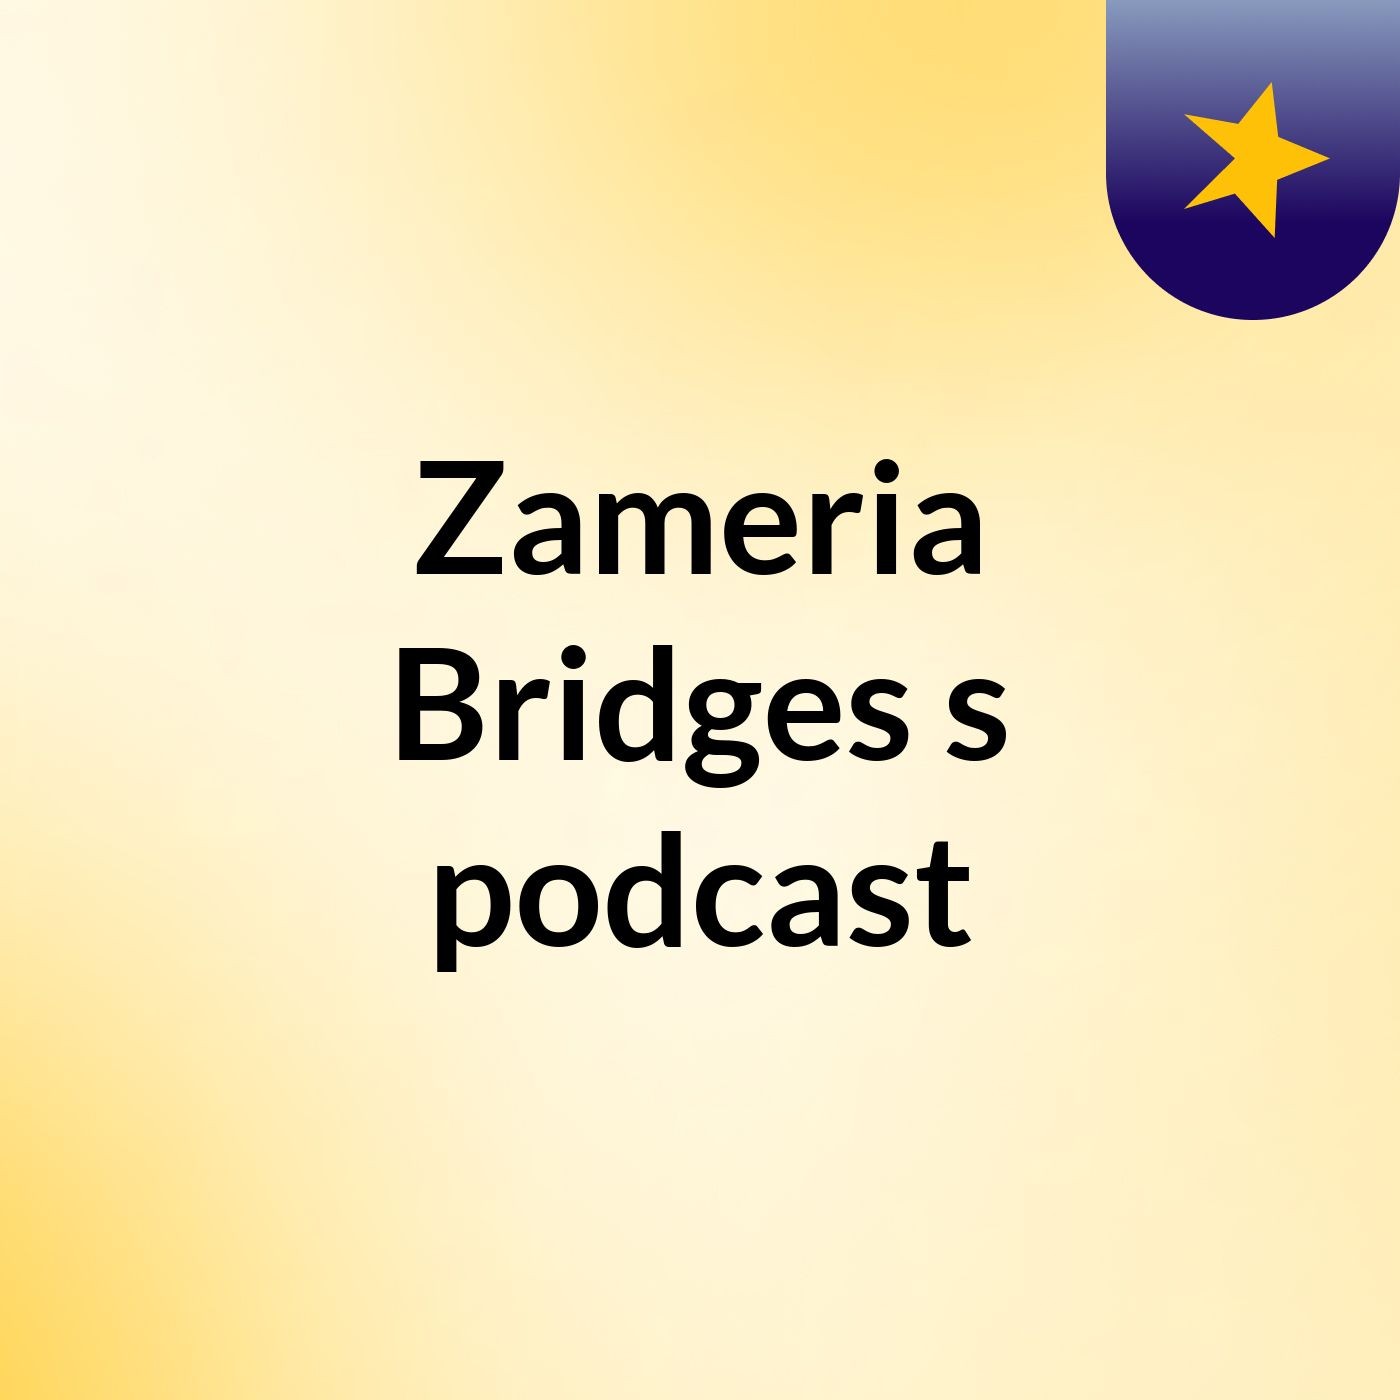 Zameria Bridges's podcast